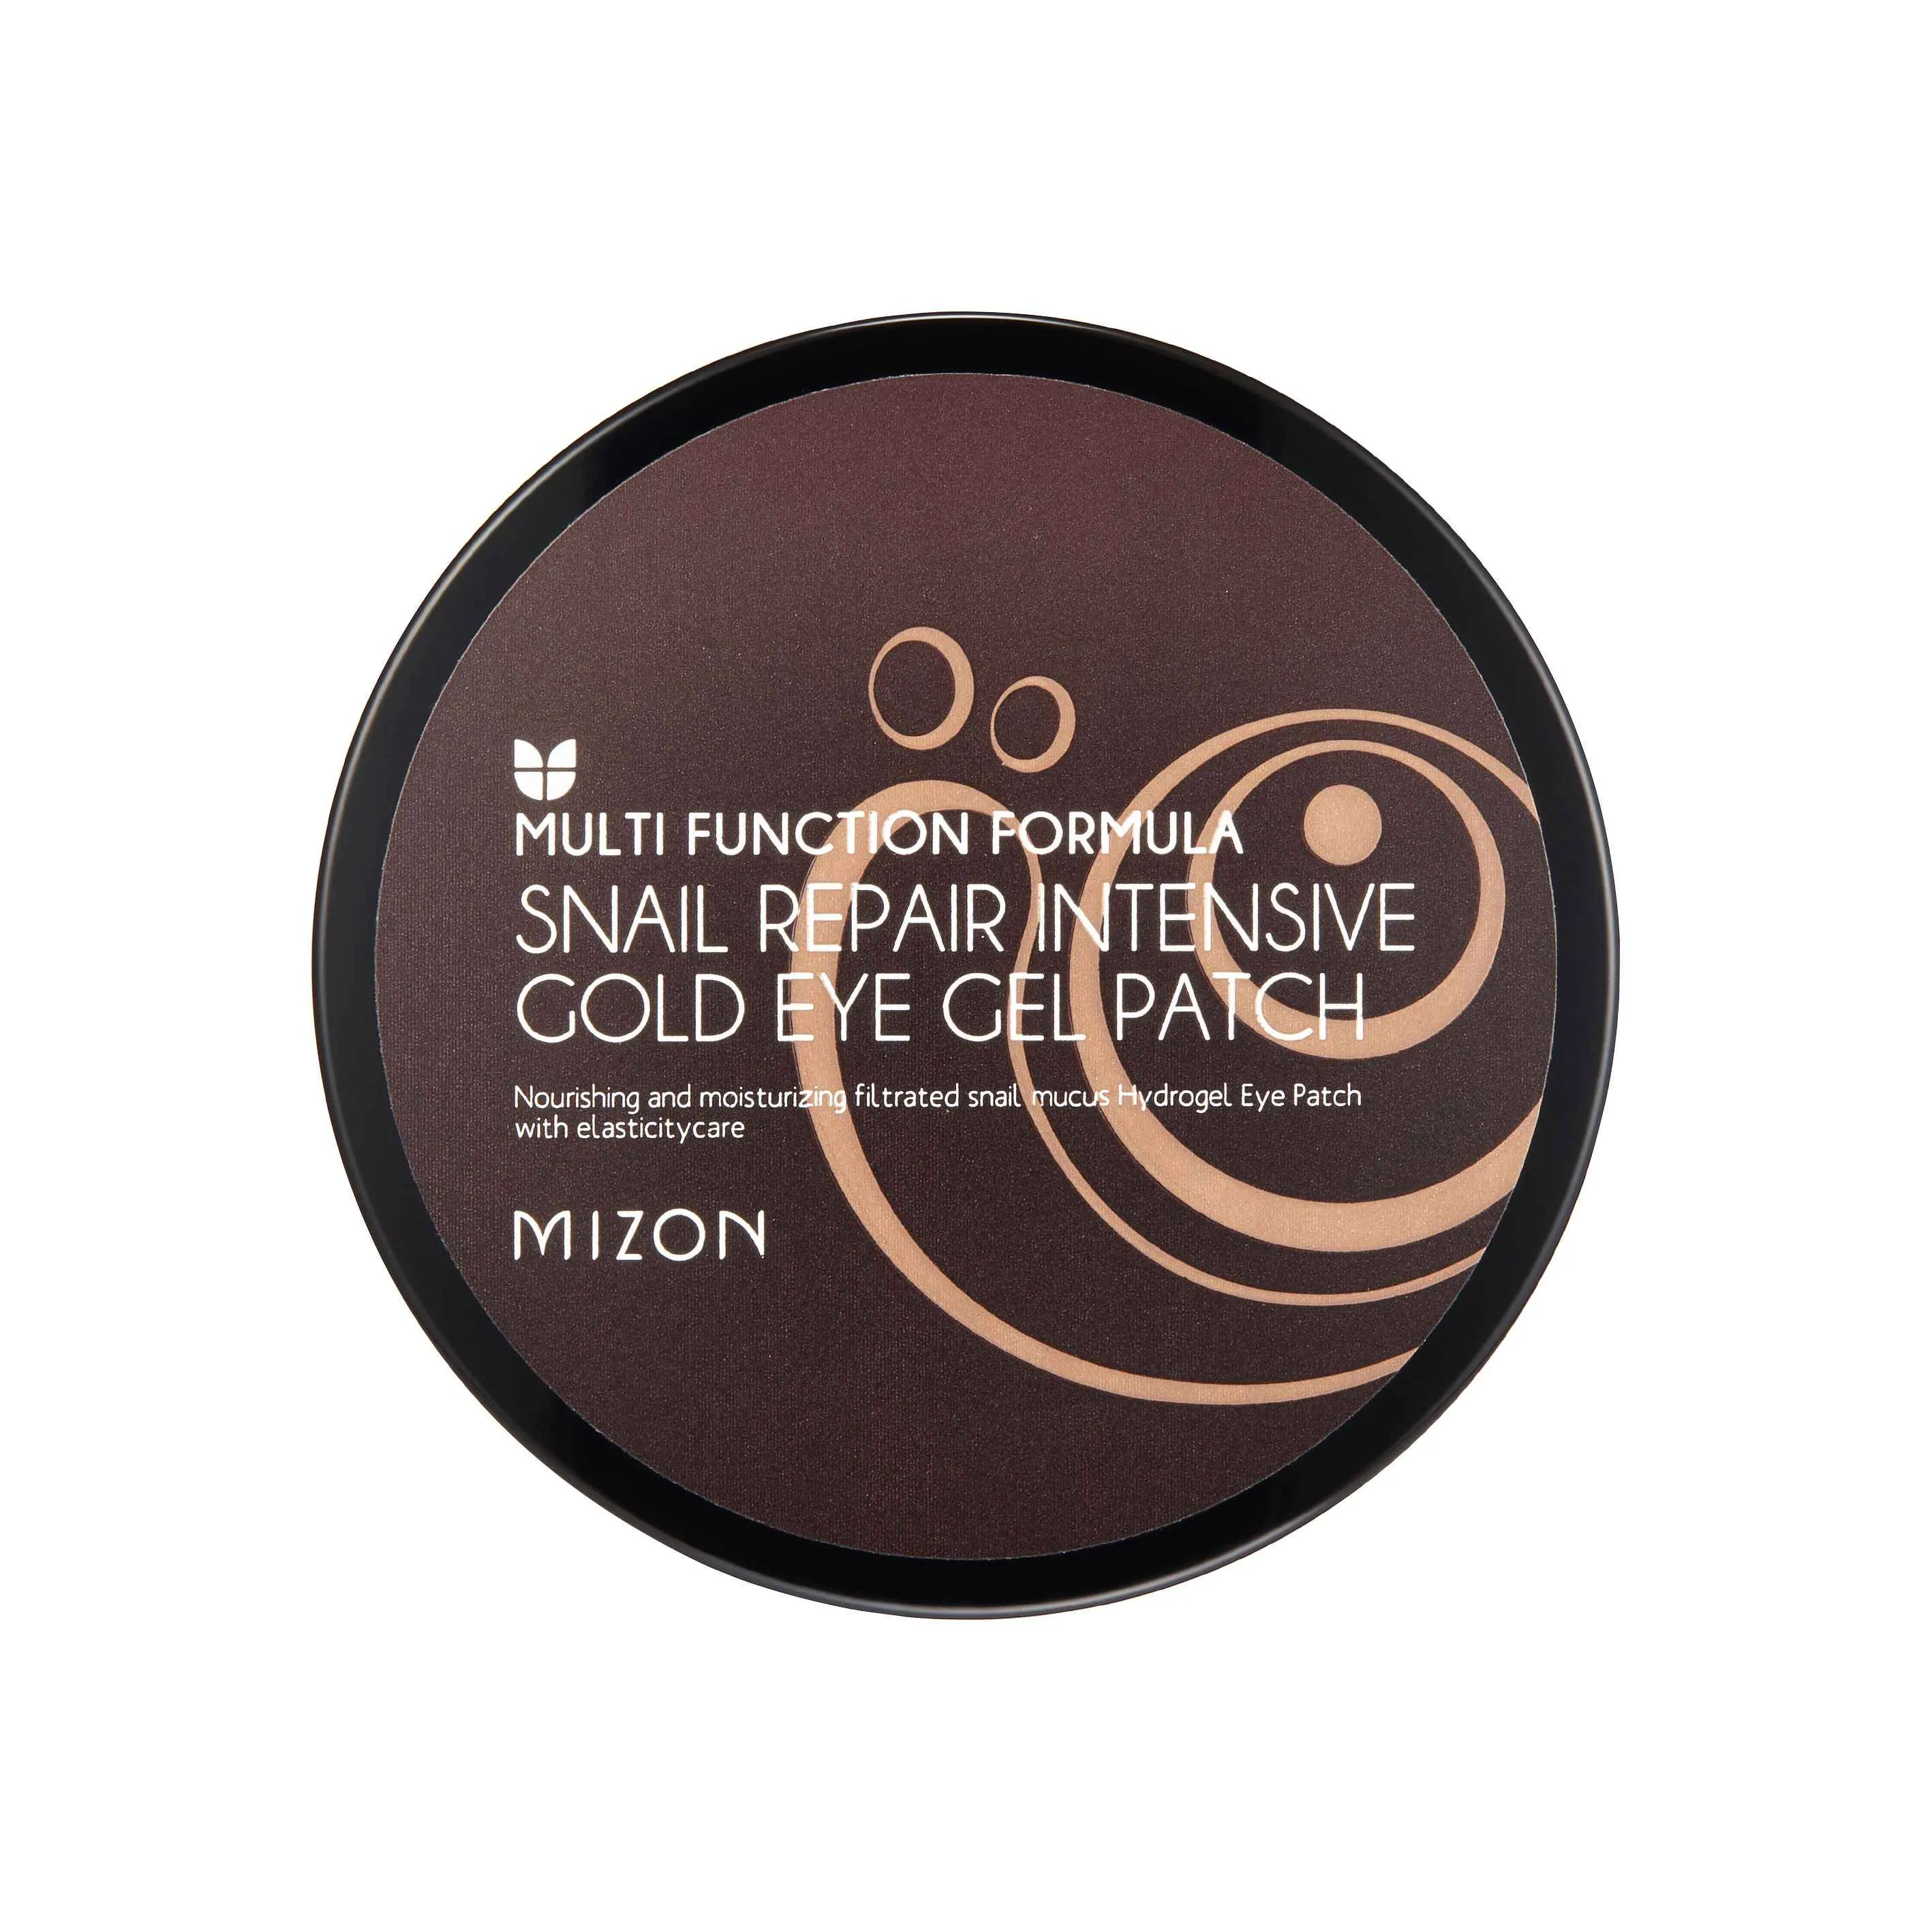 Mizon Snail Repair Intensive Gold Eye Gel Patch 90 g / 60 pcs